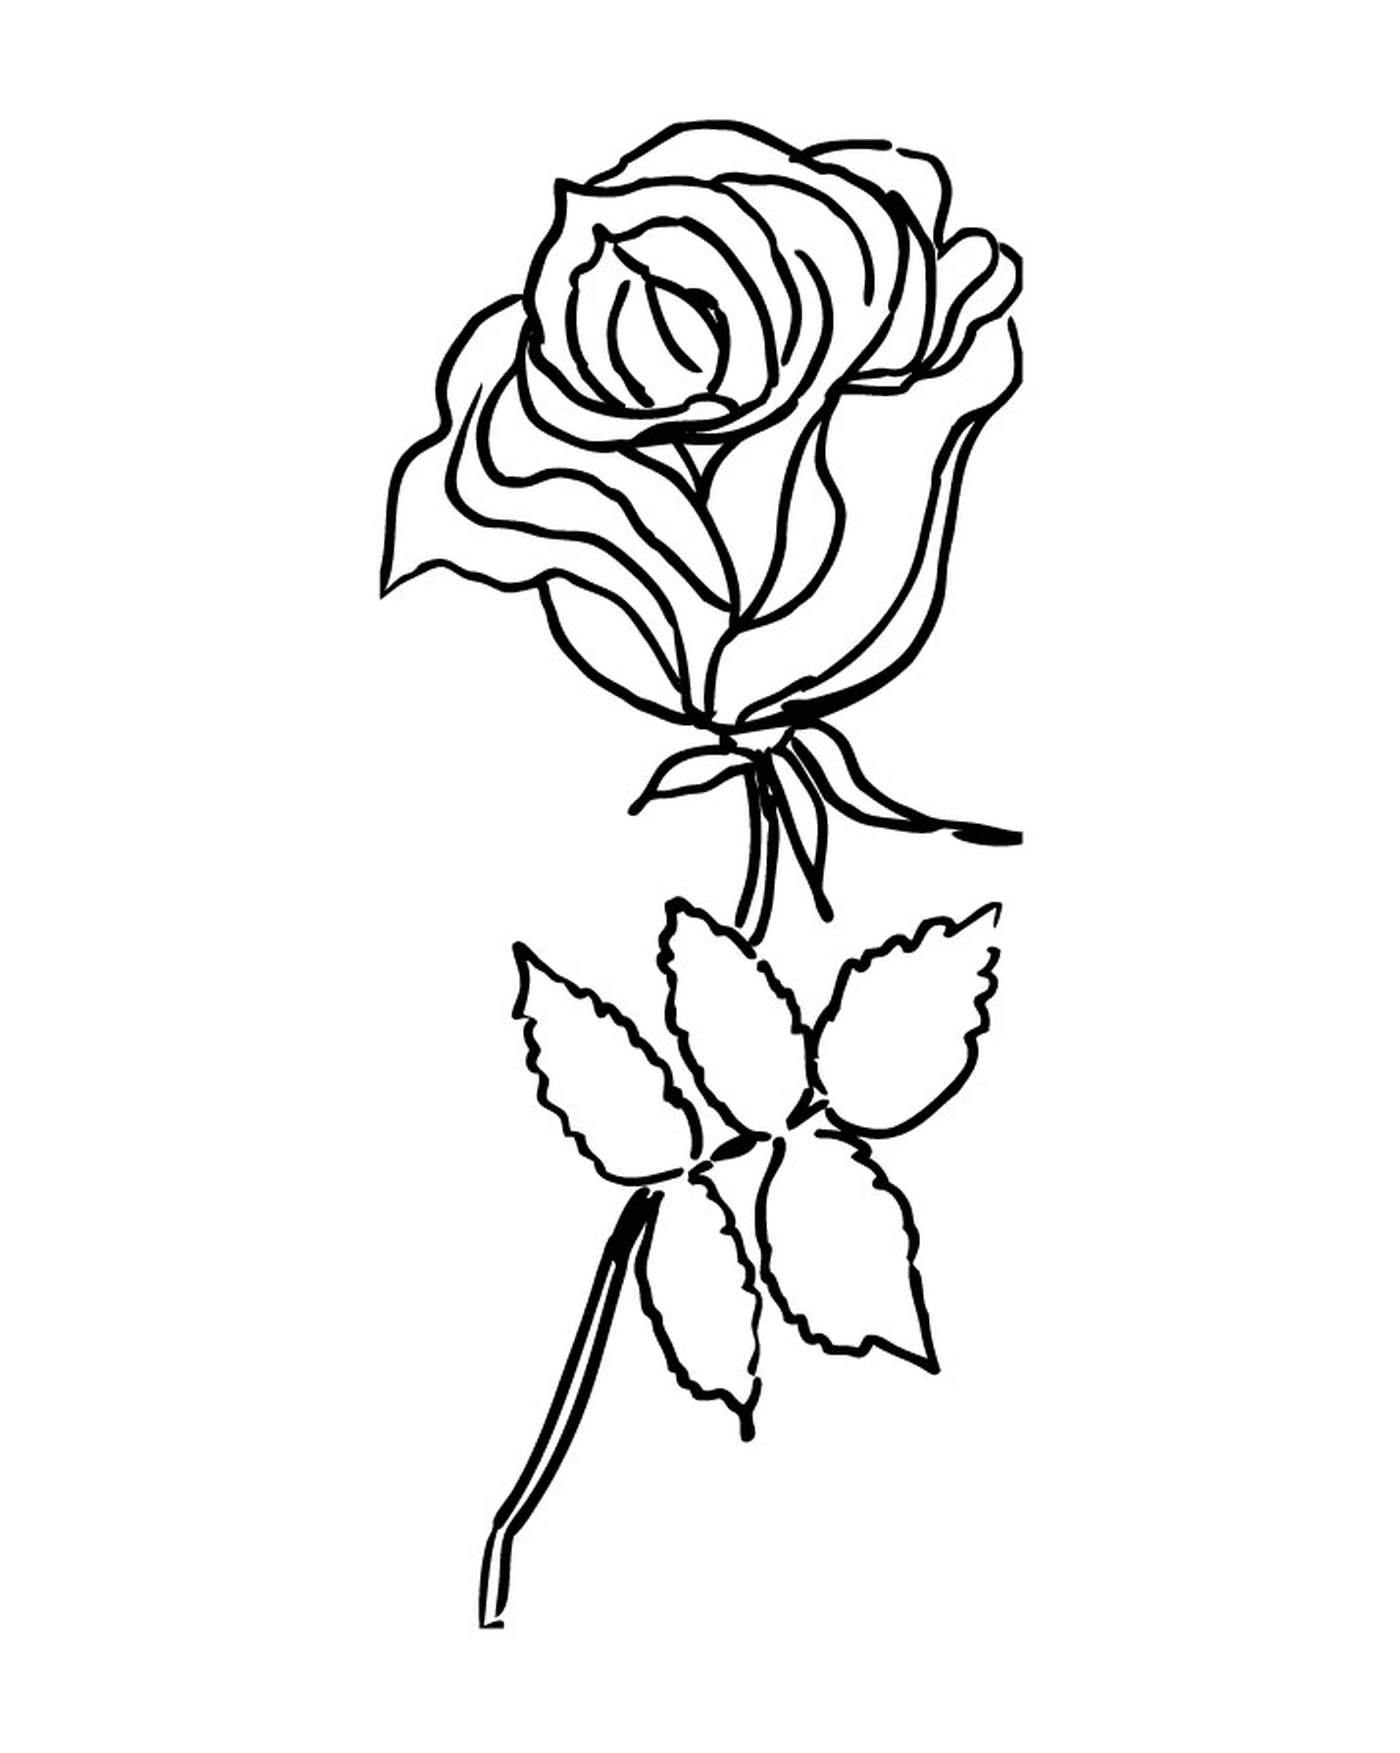  Rosa simples e elegante 